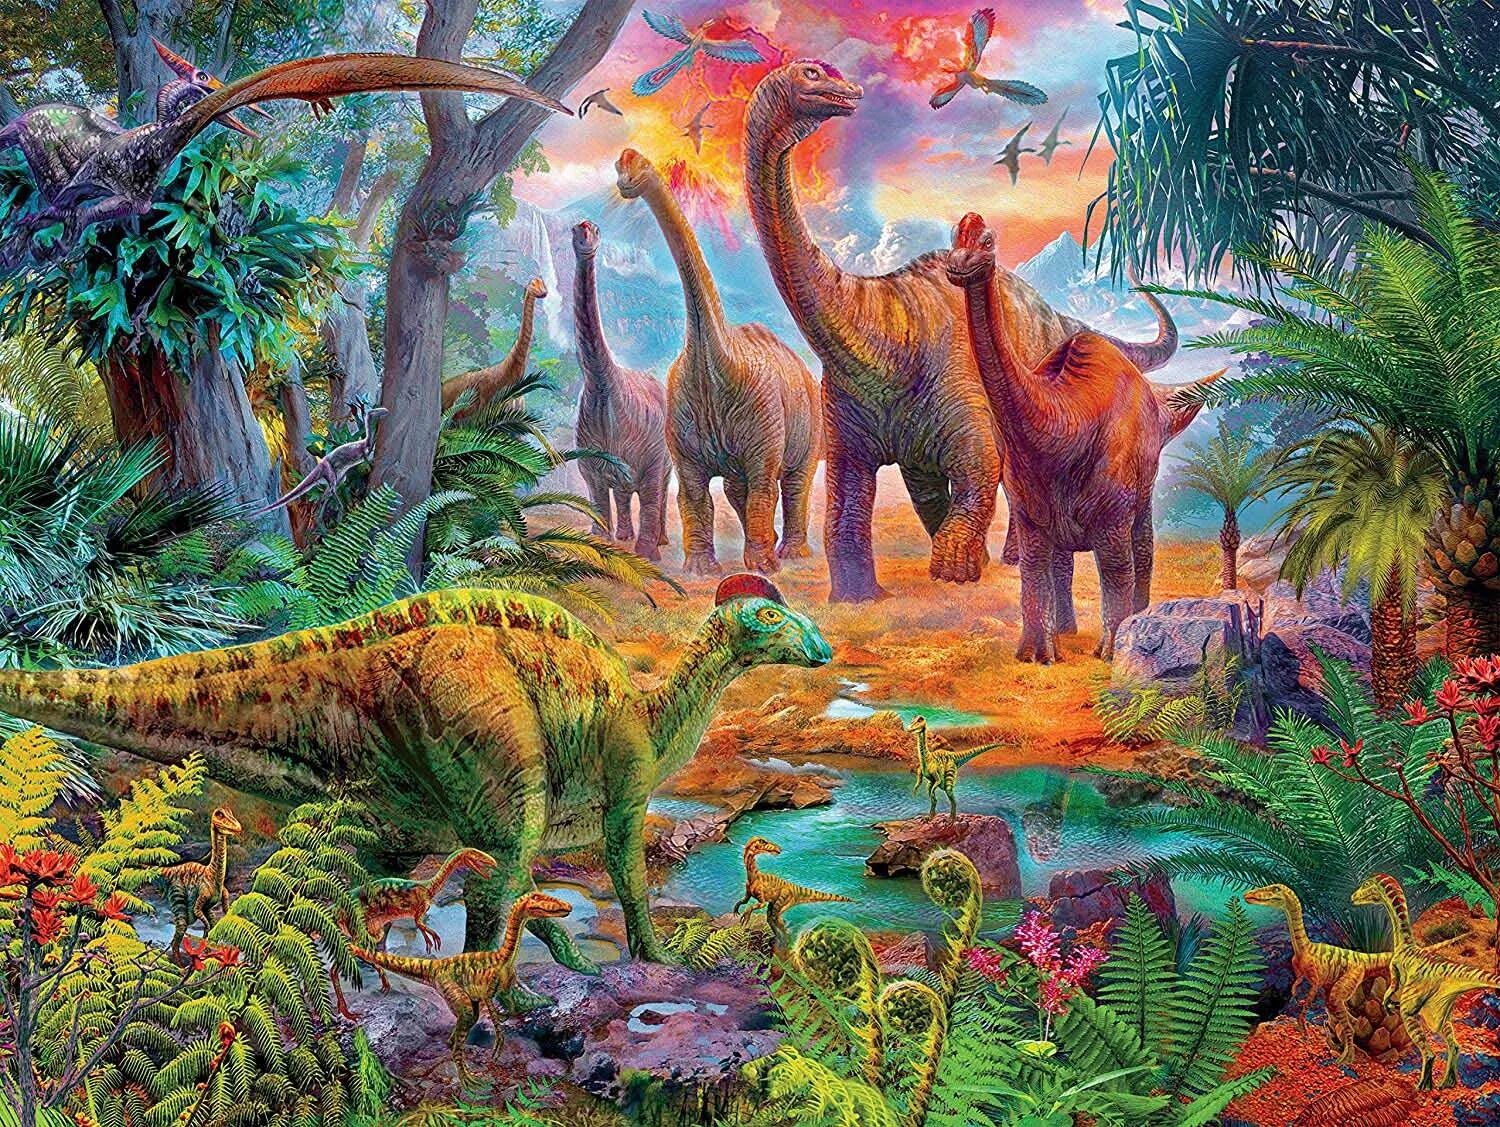 Юрский период Эра. Мир динозавров. Эра динозавров. Пейзаж Юрского периода. Урок мир динозавров